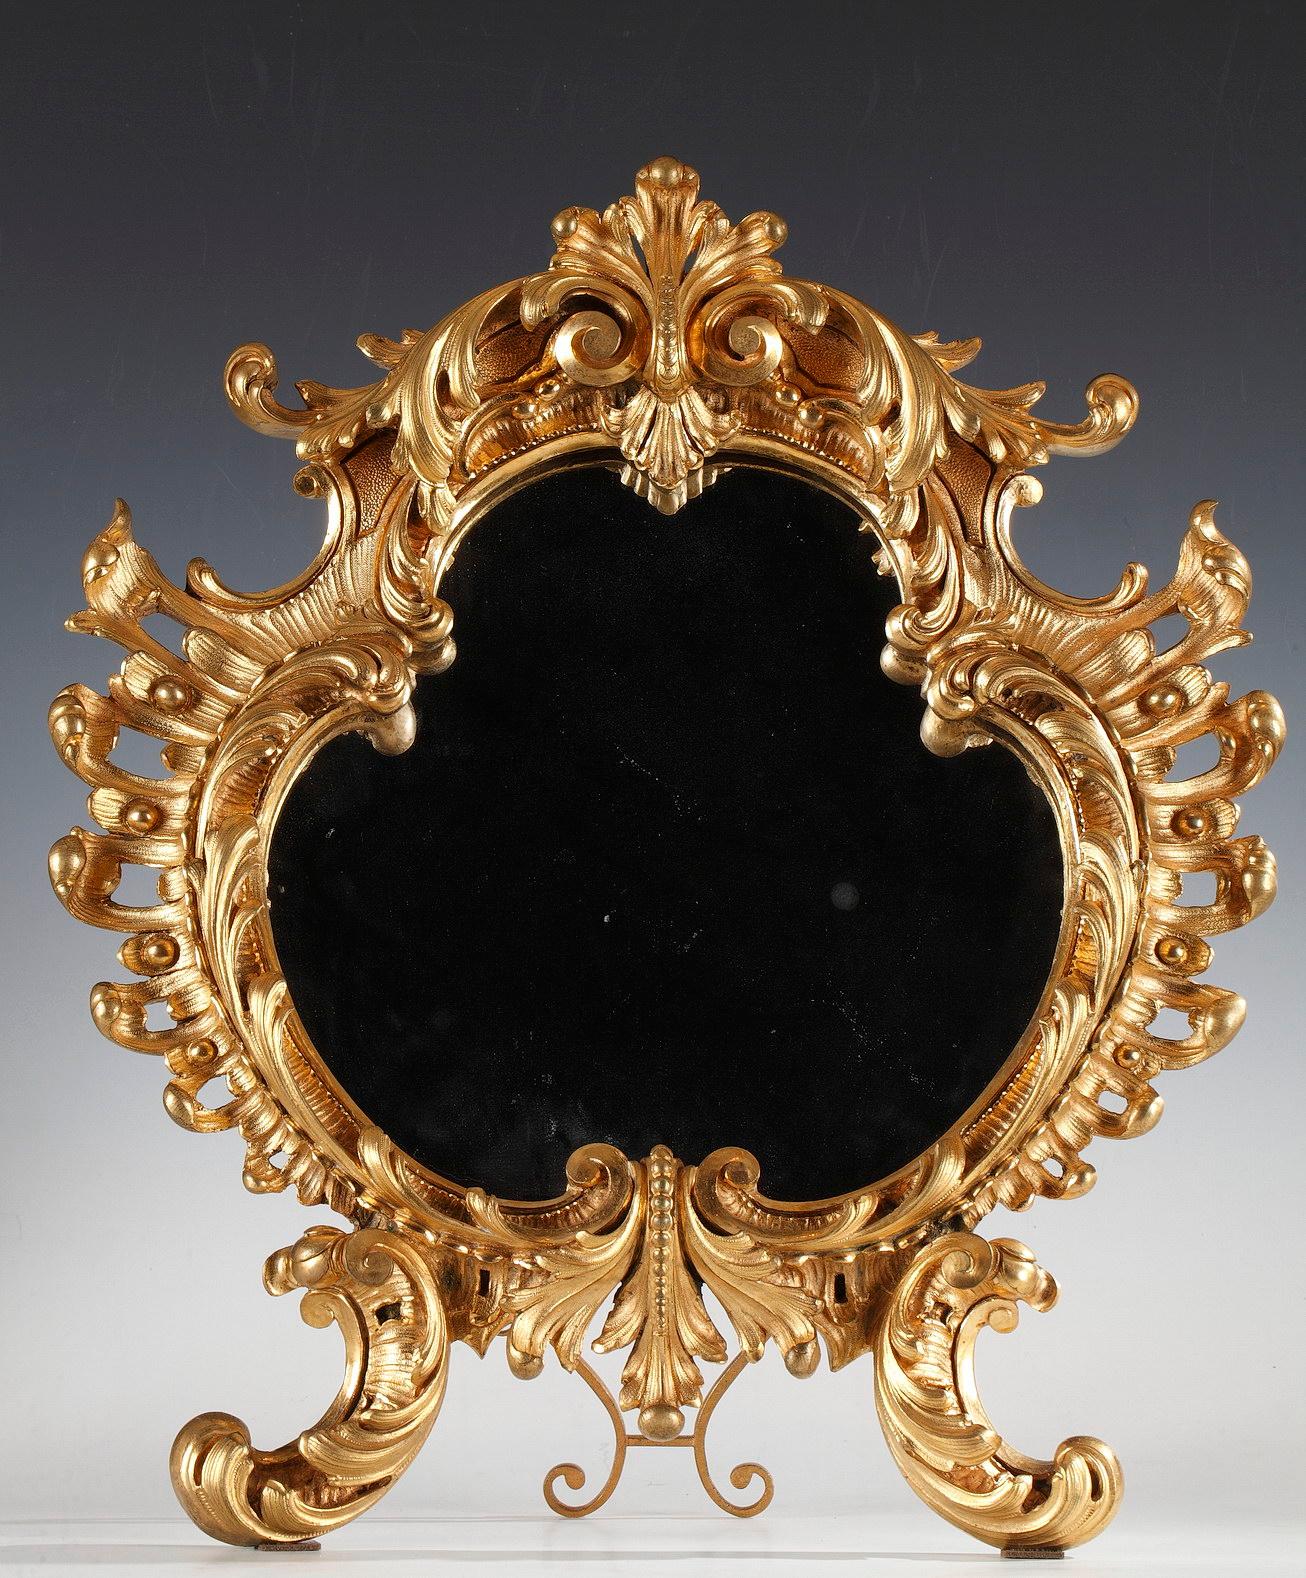 Miroir principal : Hauteur : 49 cm (19.3 in.) ; largeur : 43 cm (16.9 in.) ; profondeur : 6 cm (2.3 in.)
Petits miroirs : Hauteur : 40 cm (15.7 in.) ; largeur : 34 cm (13.4 in.) ; profondeur : 4 cm (1.6 in.)

Élégant ensemble de trois miroirs,